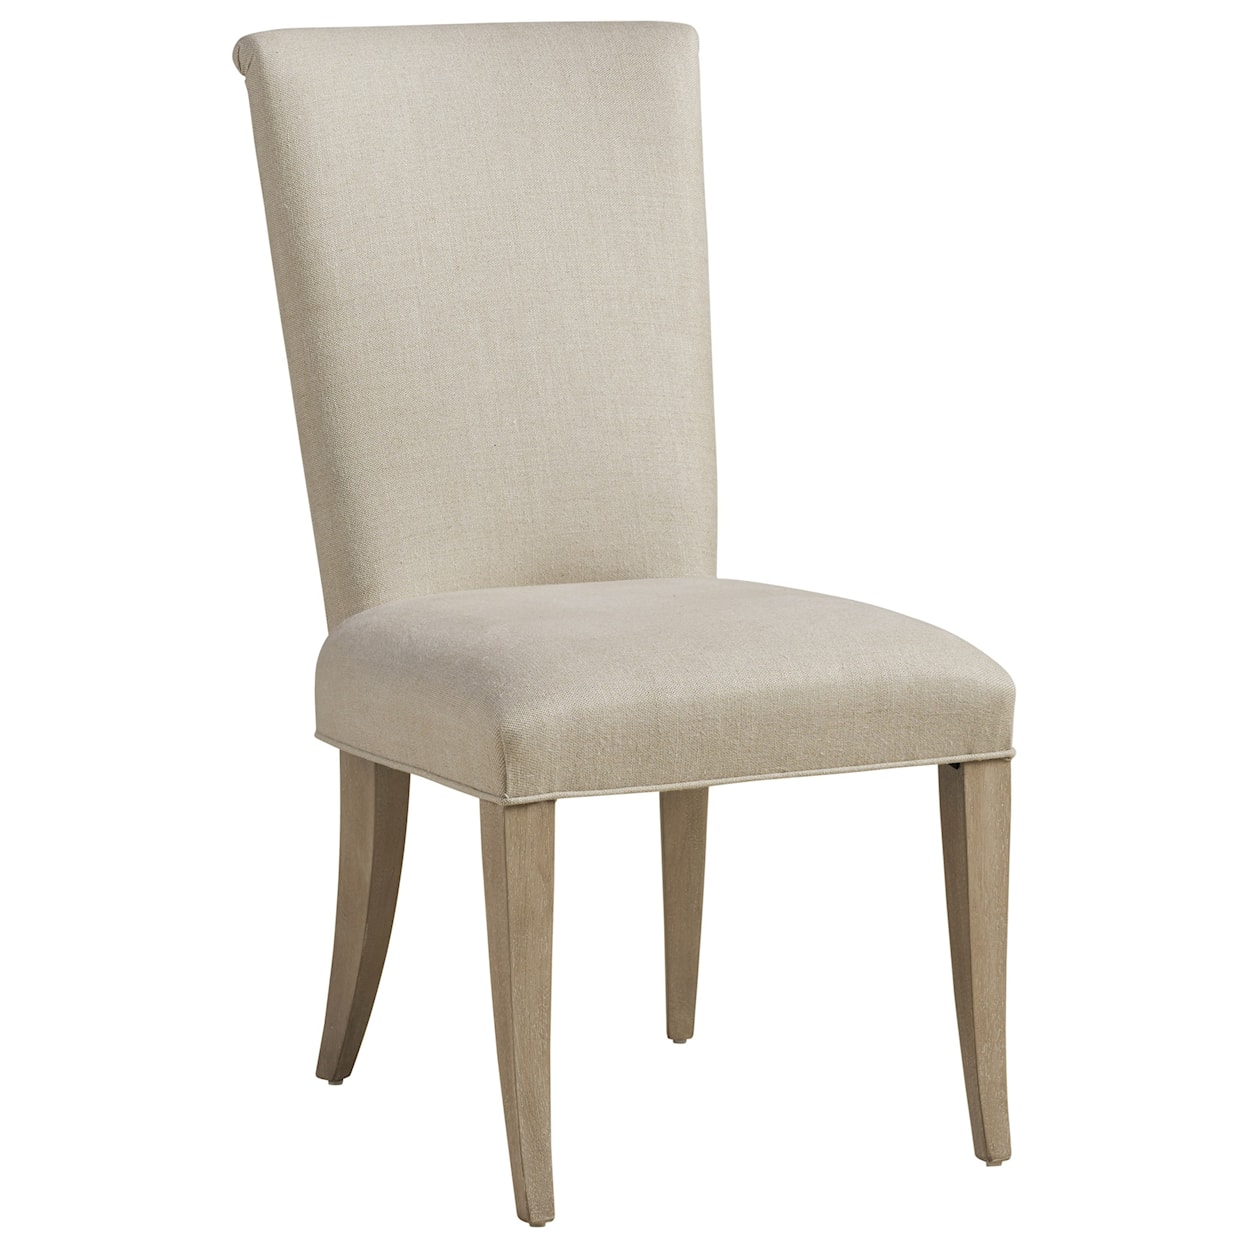 Barclay Butera Malibu Serra Upholstered Side Chair